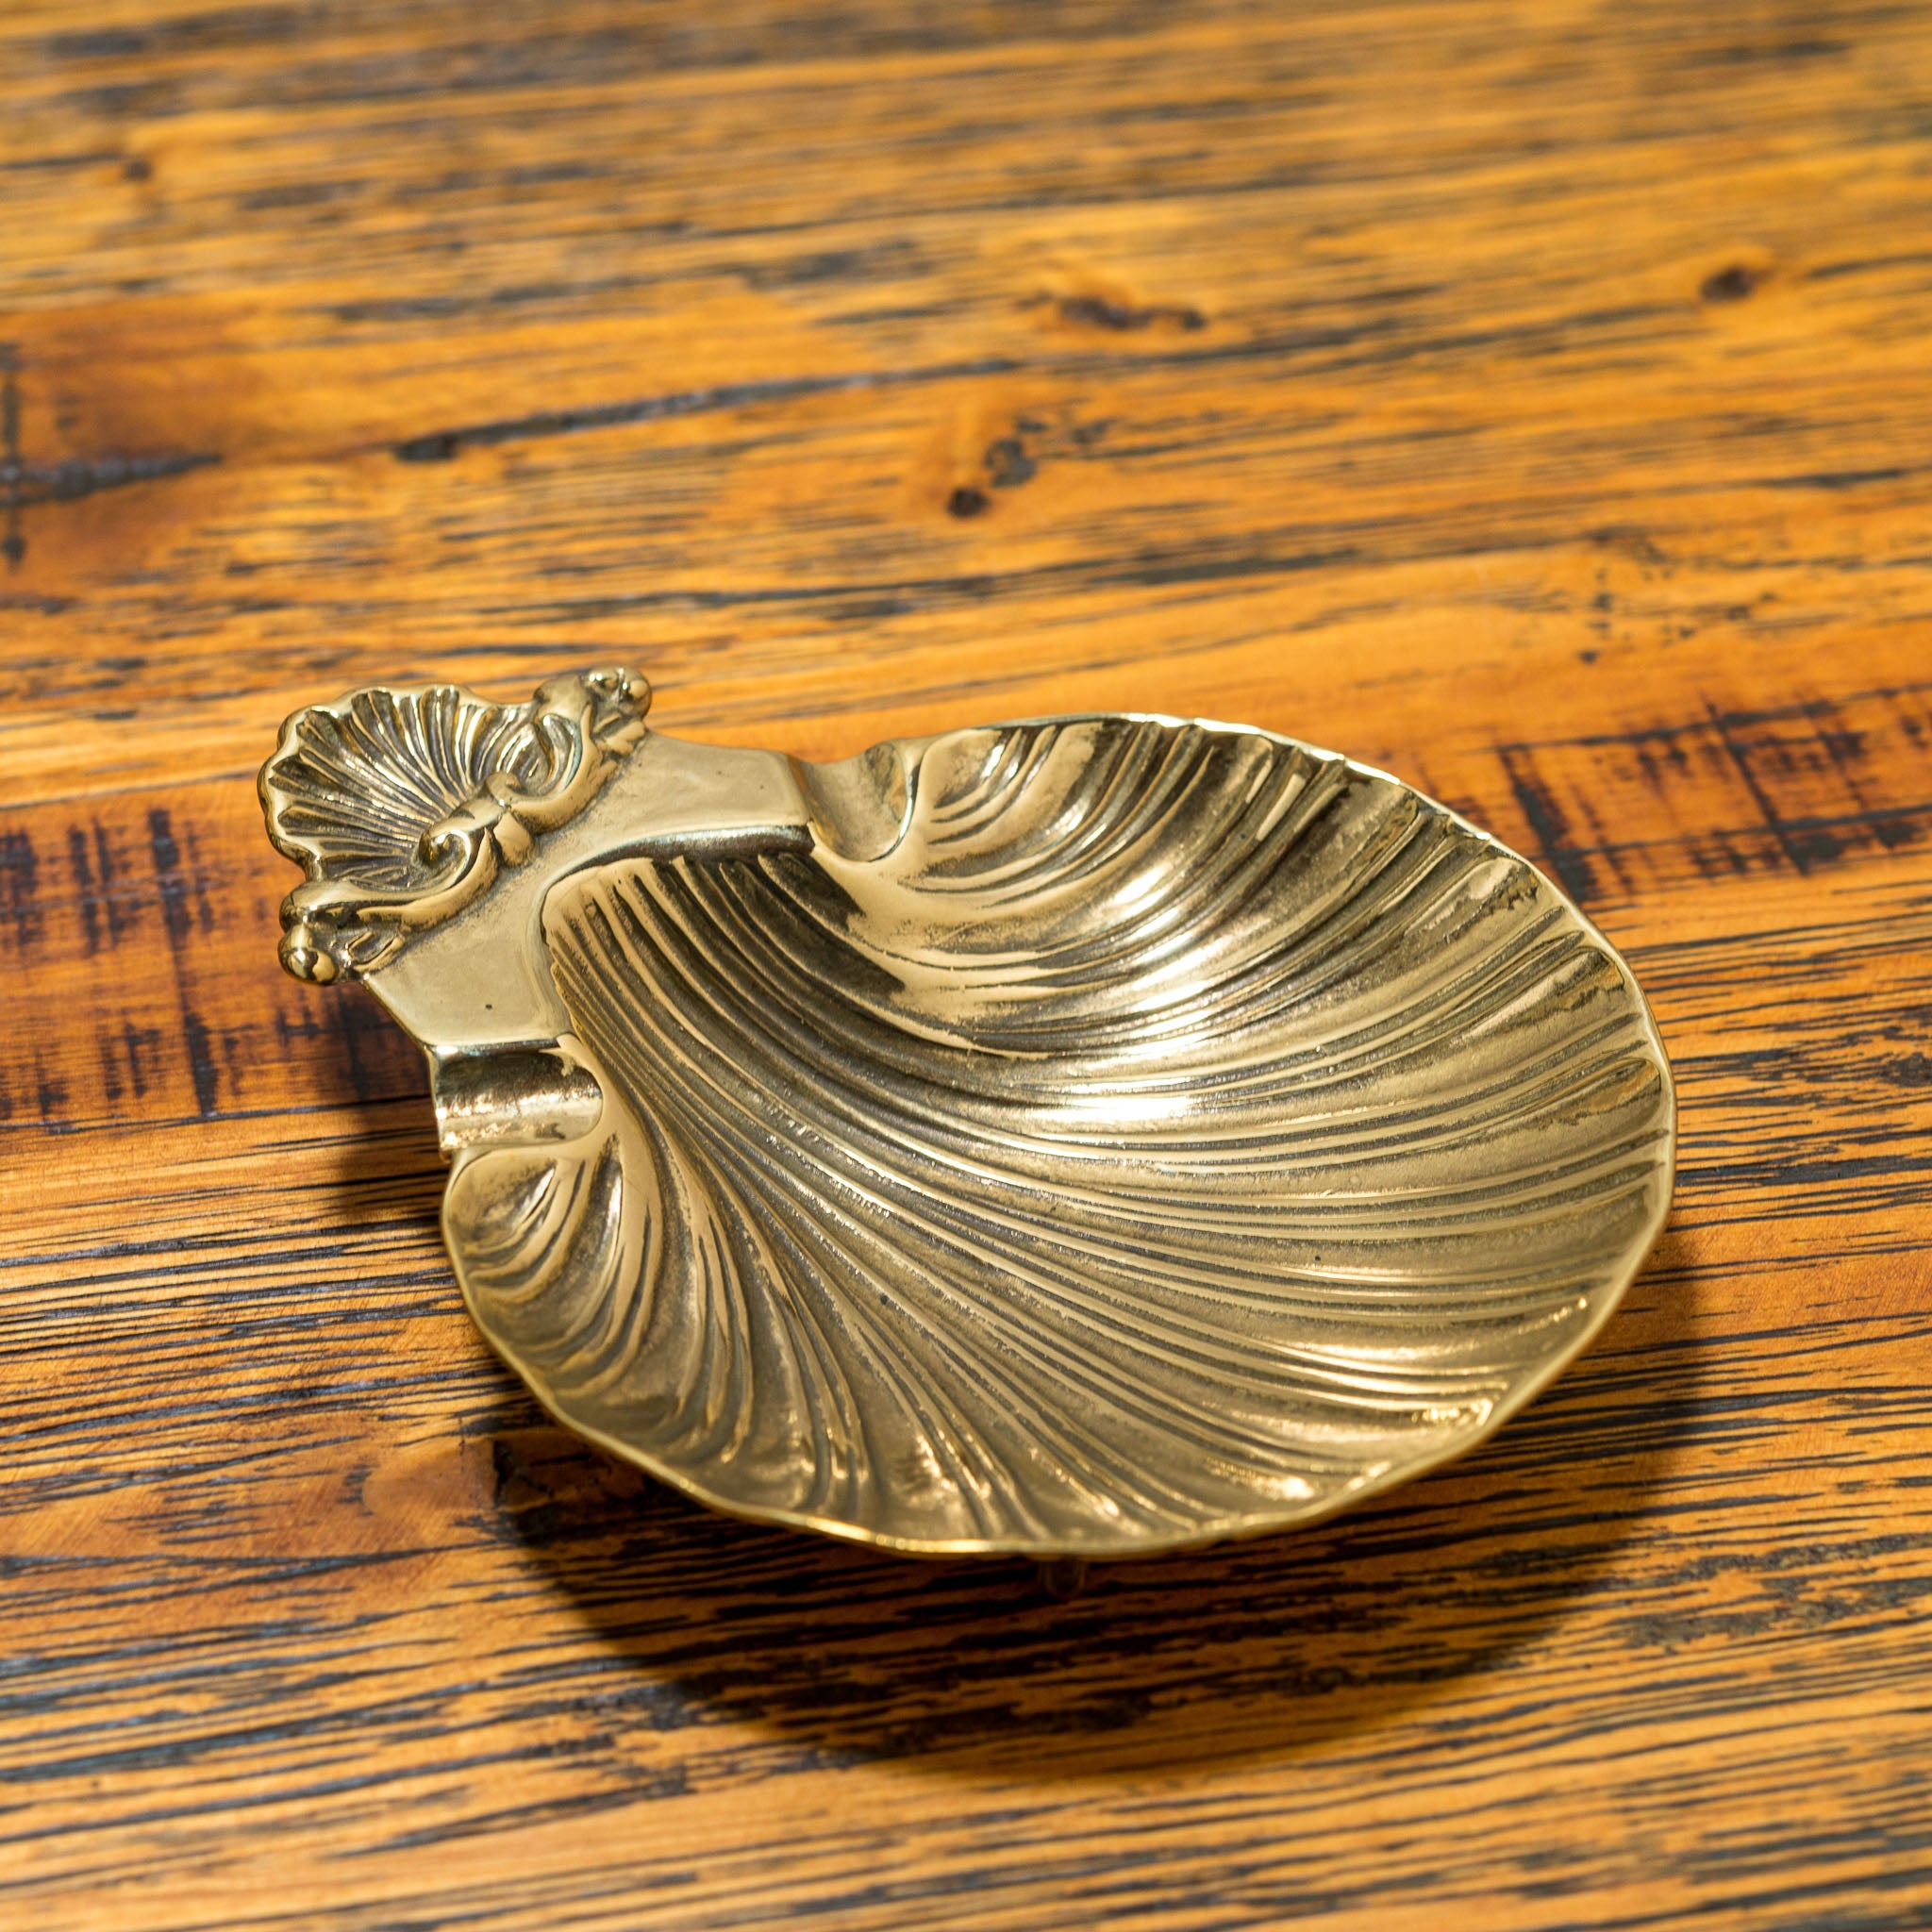  ブラス真鍮シェルトレー クラシカル雑貨イタリア製小物入れゴールド